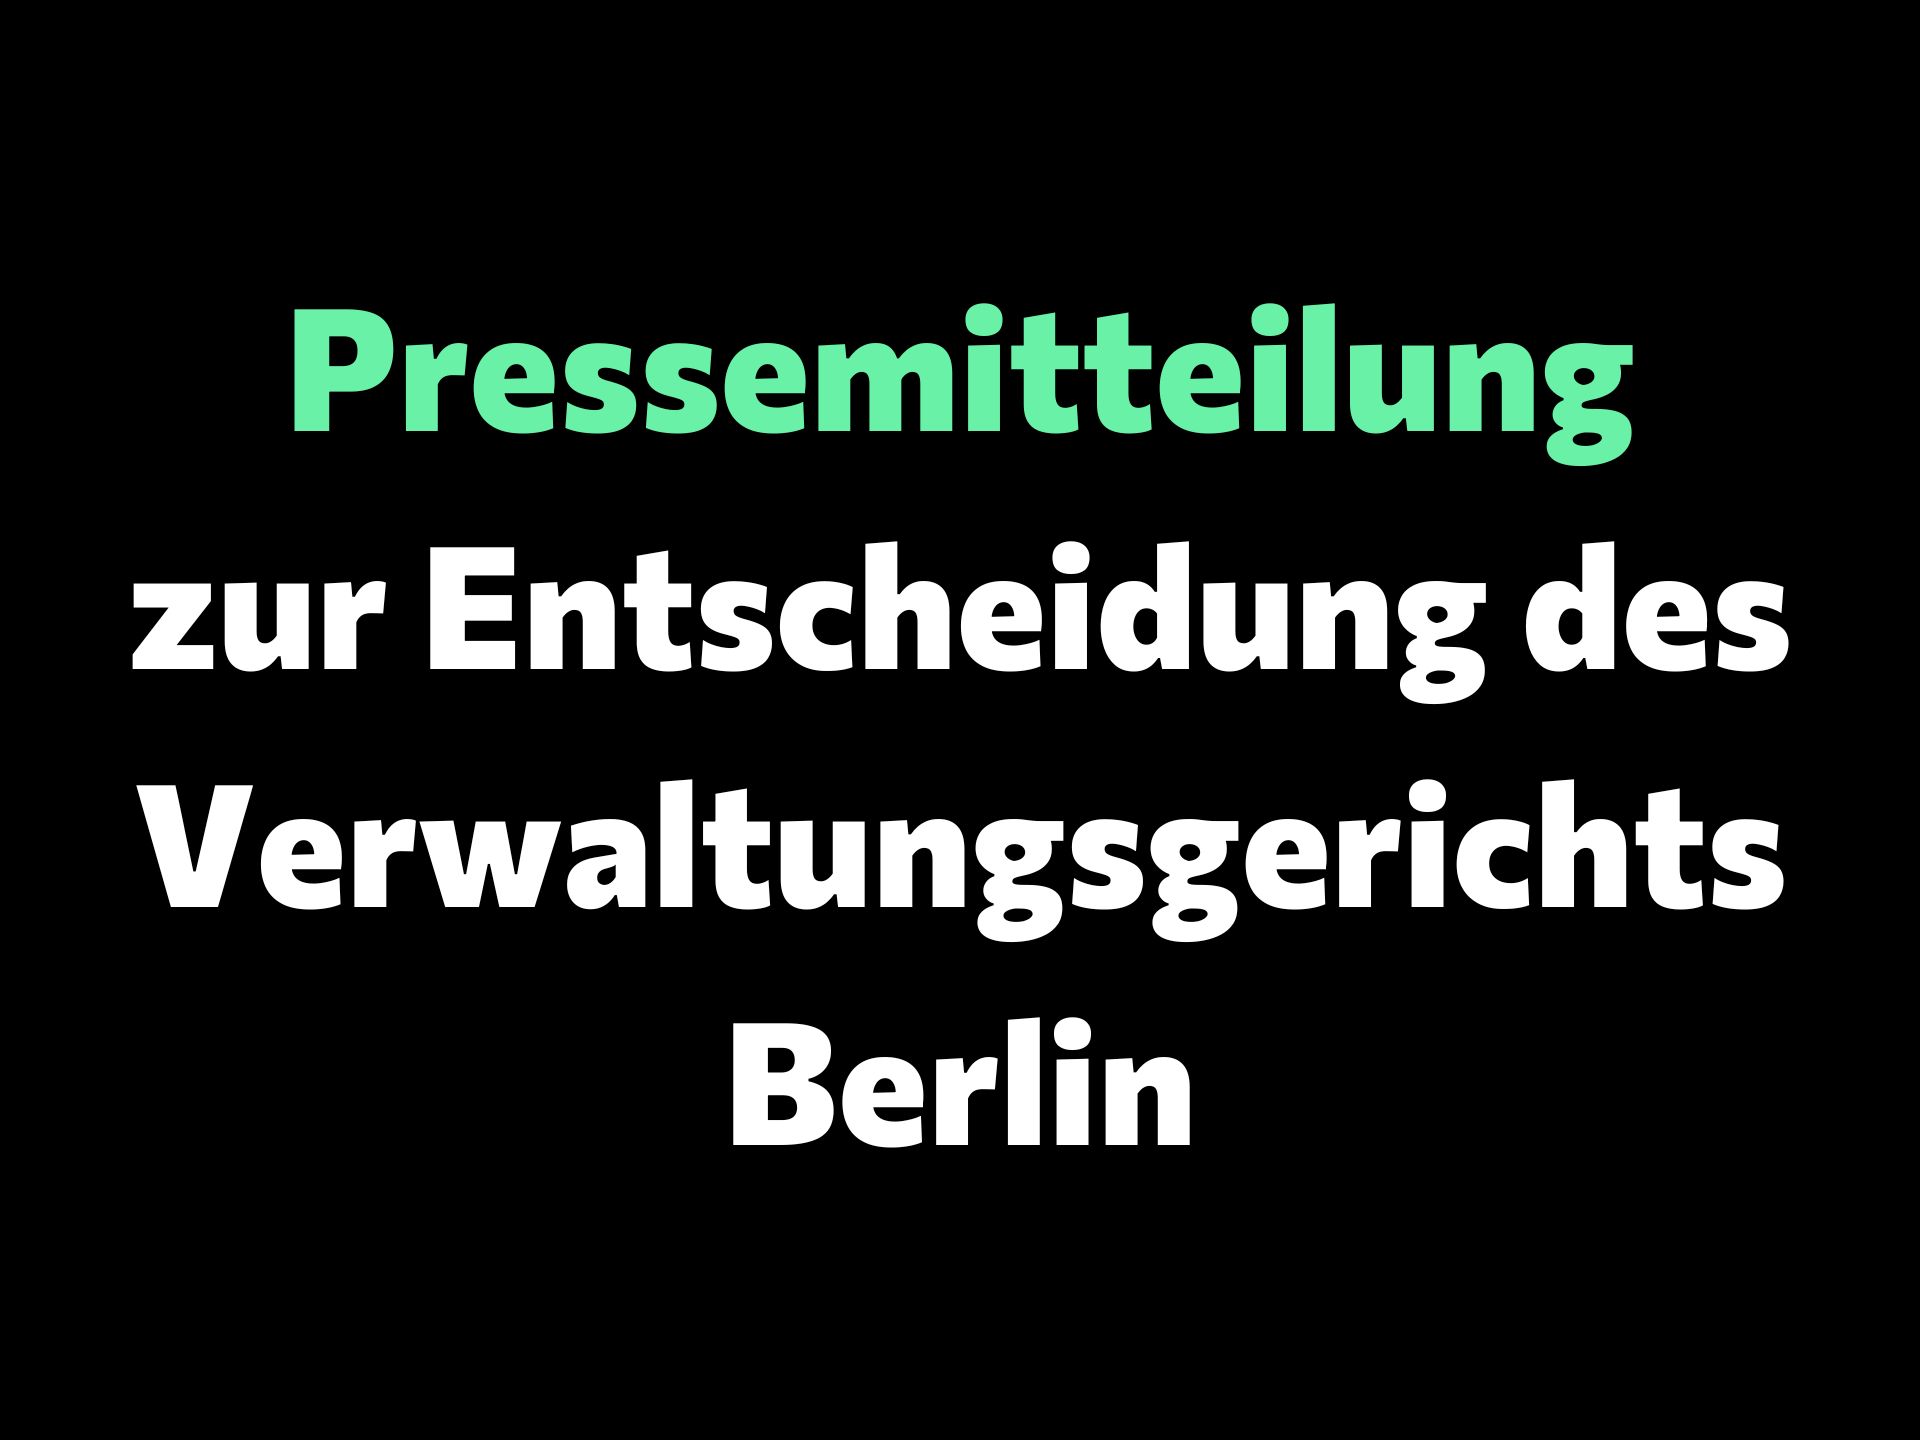 بیانیه مطبوعاتی درباره تصمیم دادگاه اداری برلین